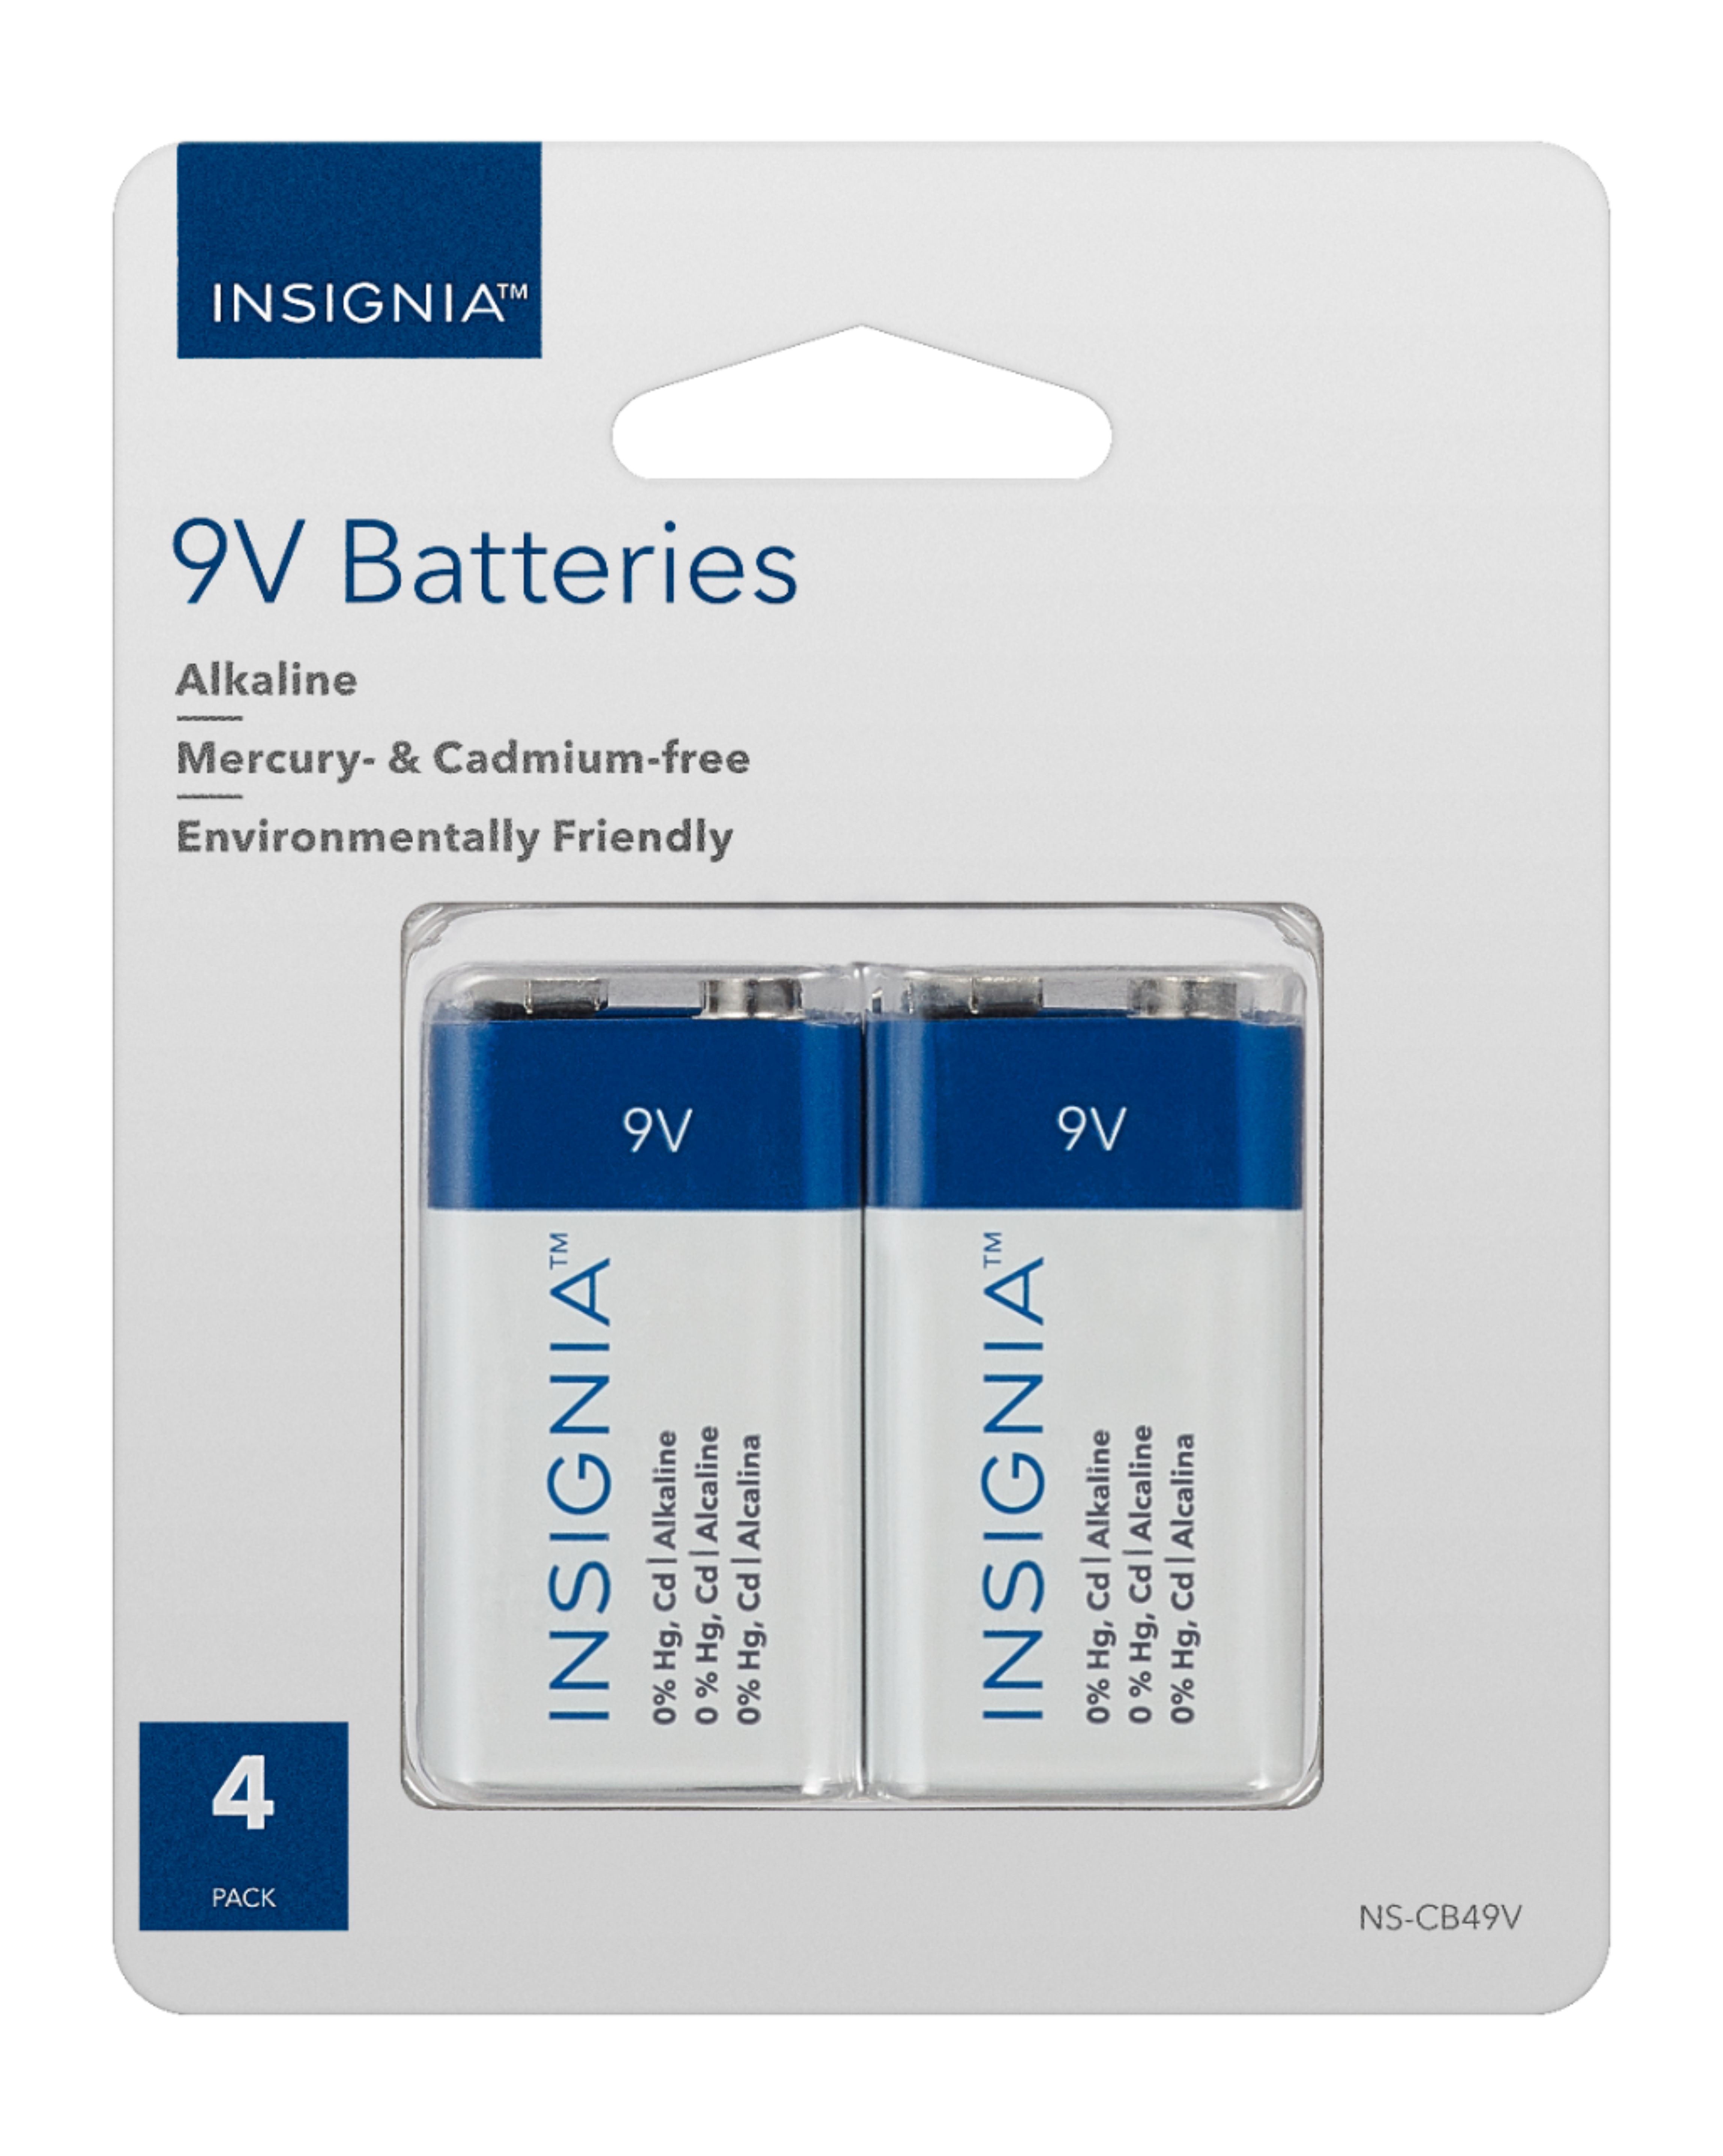 Insignia™ 9V Batteries (4-Pack) NS-CB49V - Best Buy